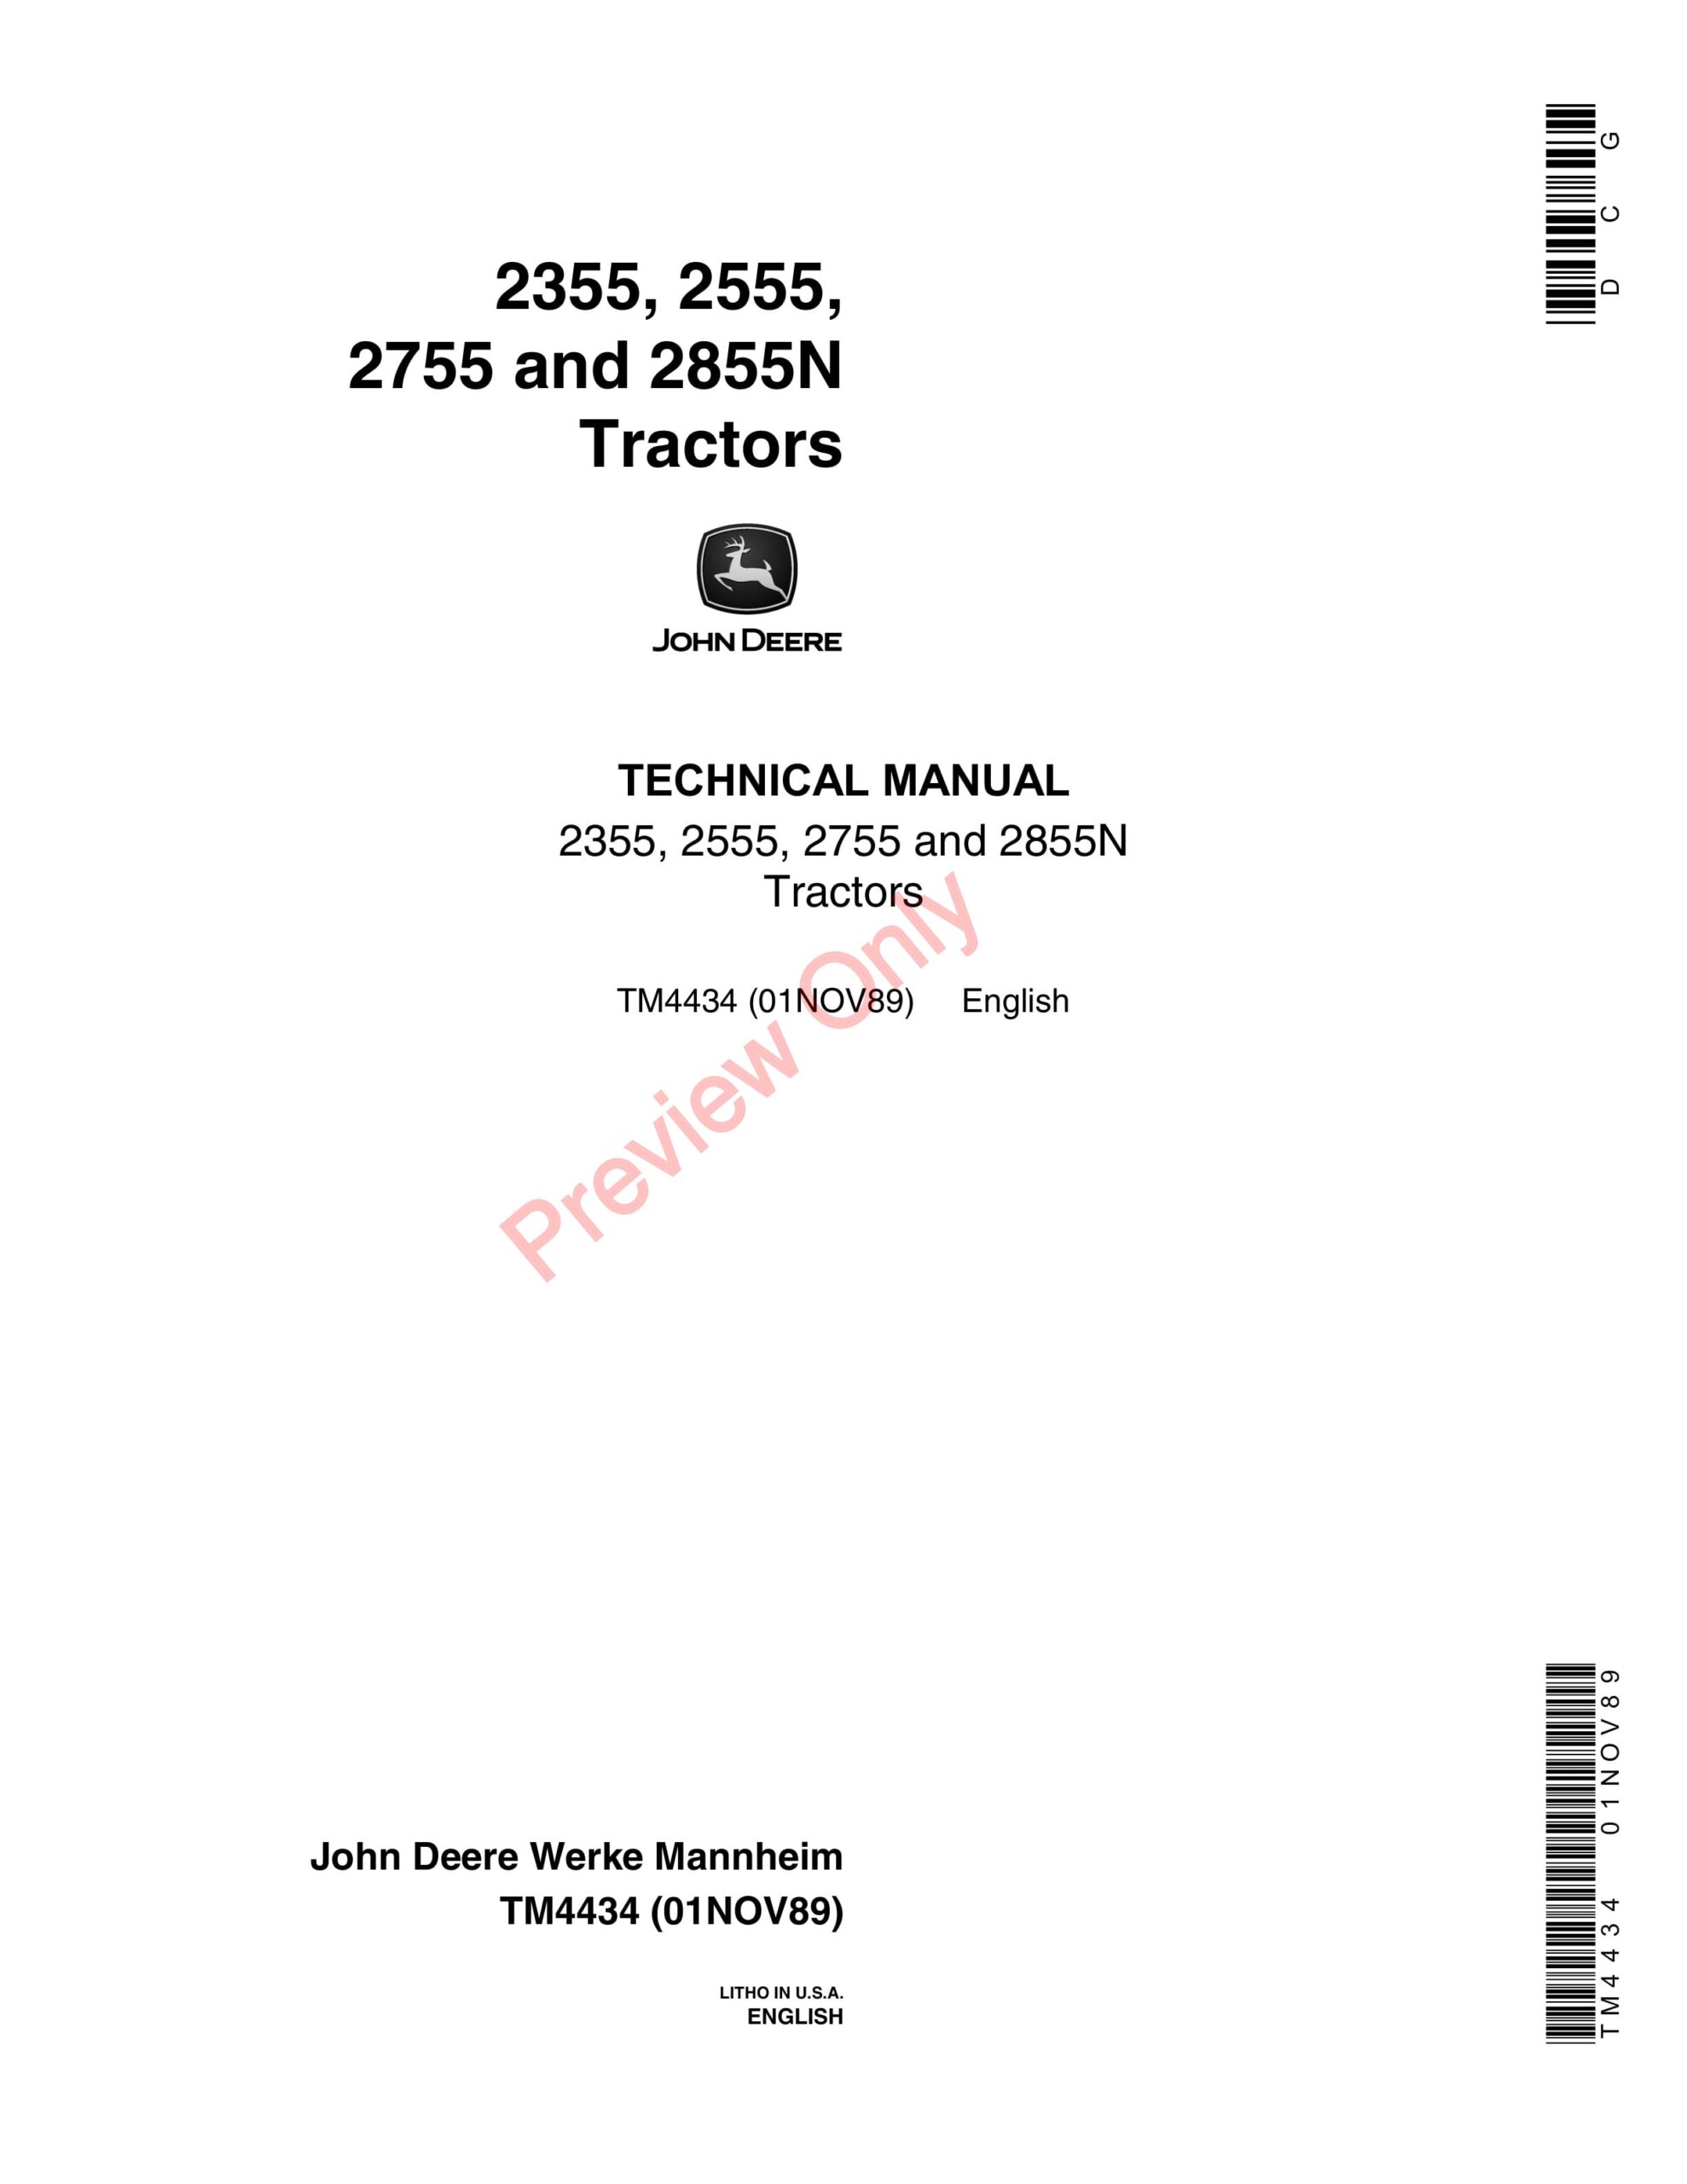 John Deere 2355, 2555, 2755 and 2855 Tractors – Technical Manual TM4434 01NOV89-1